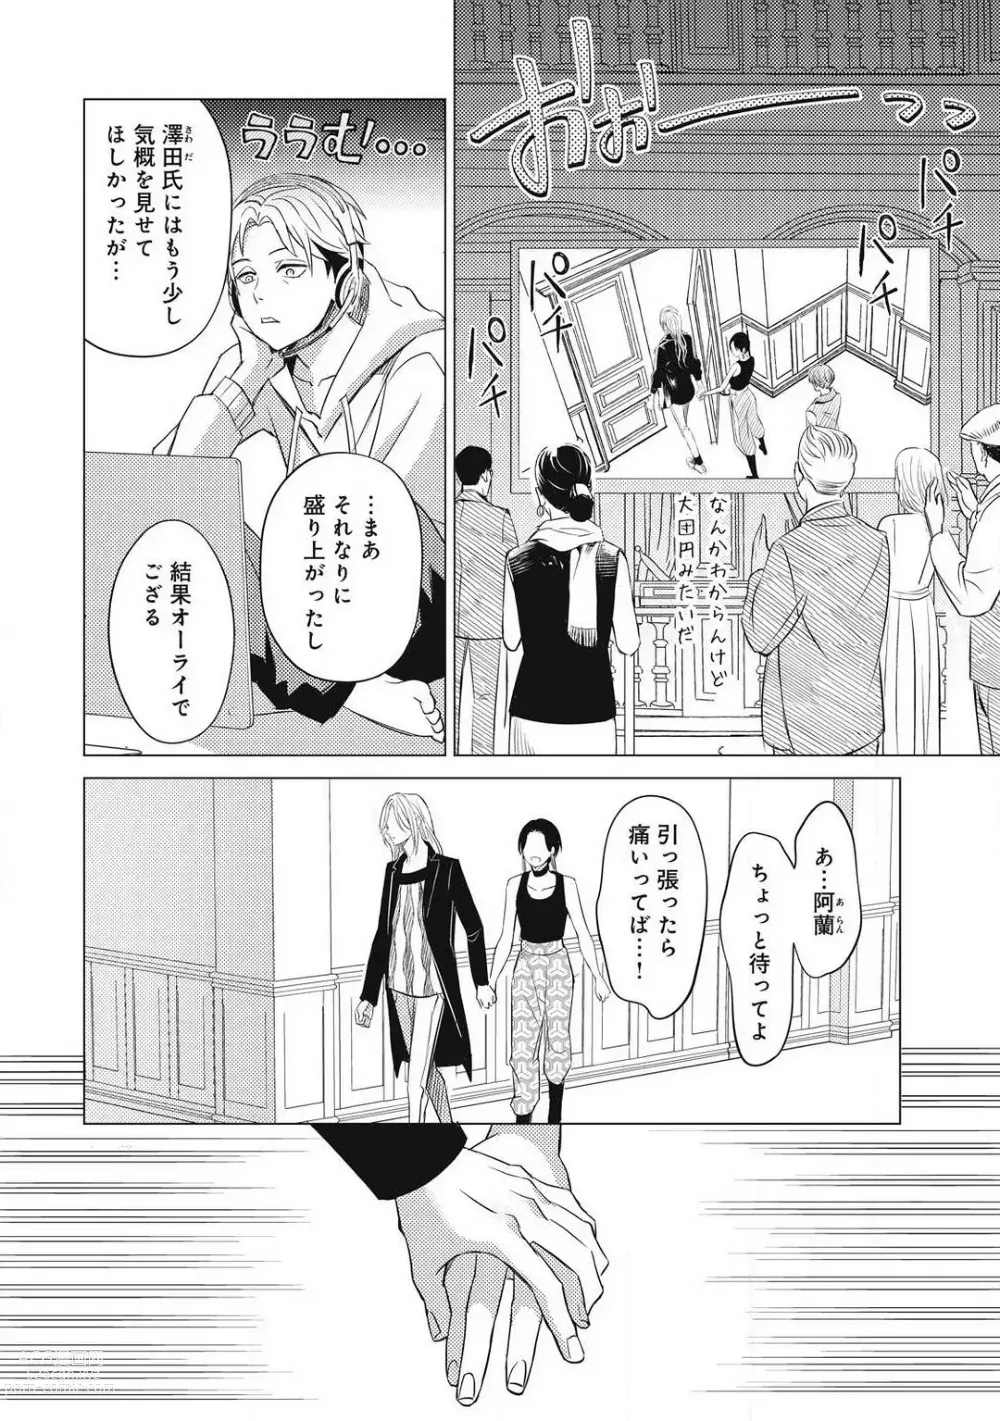 Page 816 of manga Sono Bijin (Otoko) Fushidara ni Tsuki 1-27